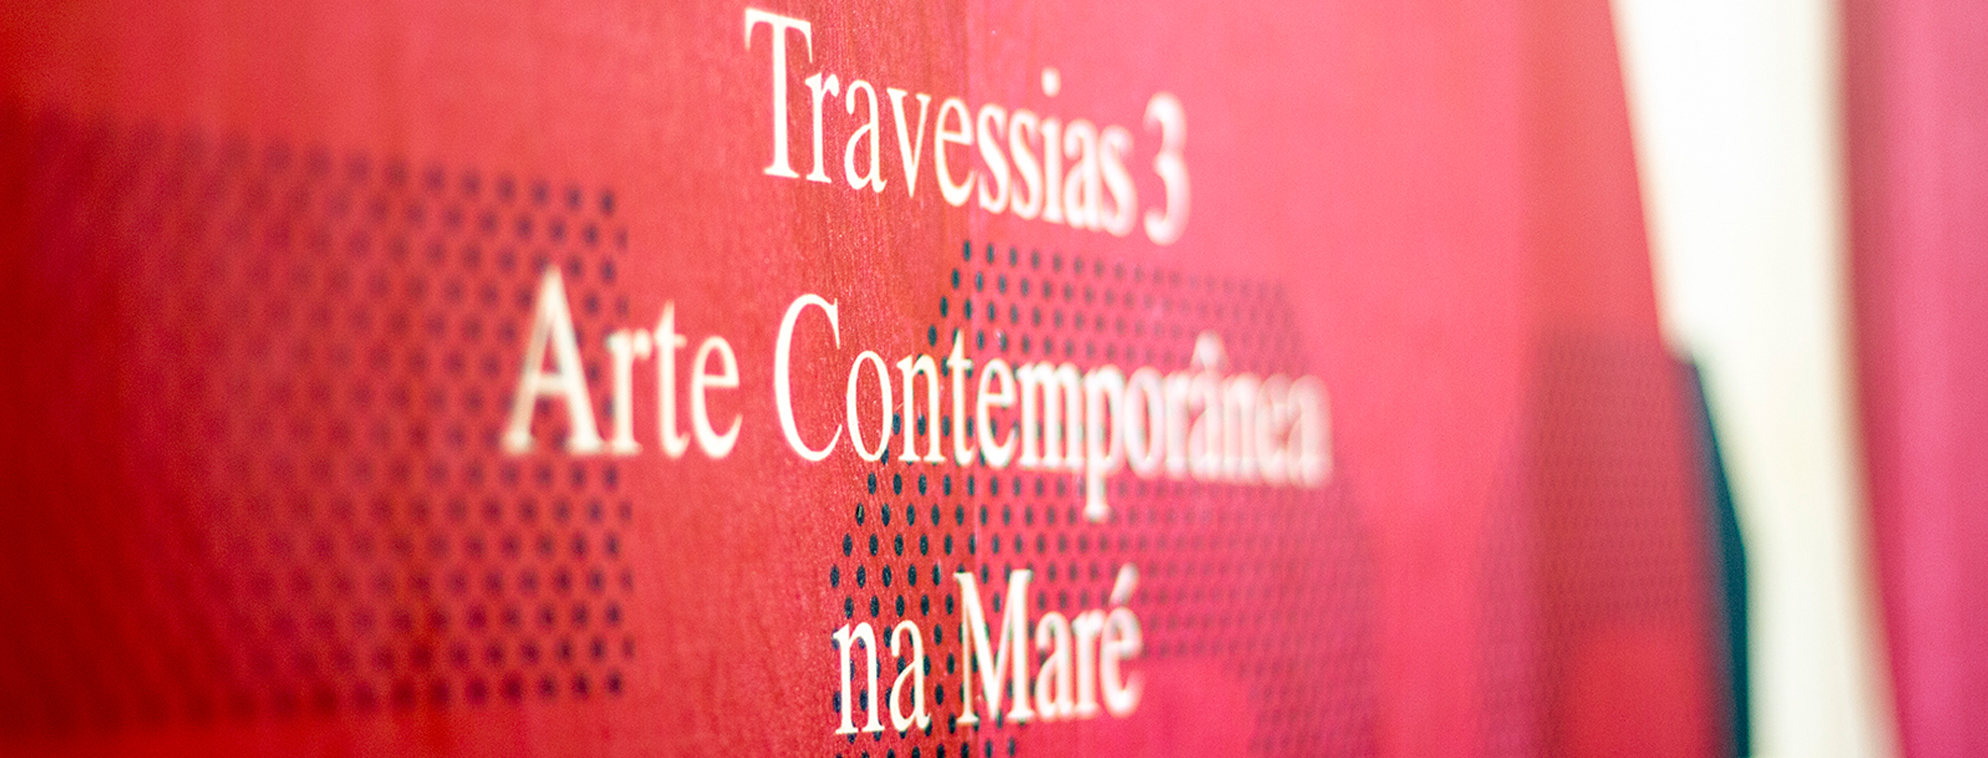 Travessias 3 – Arte Contemporânea na Maré